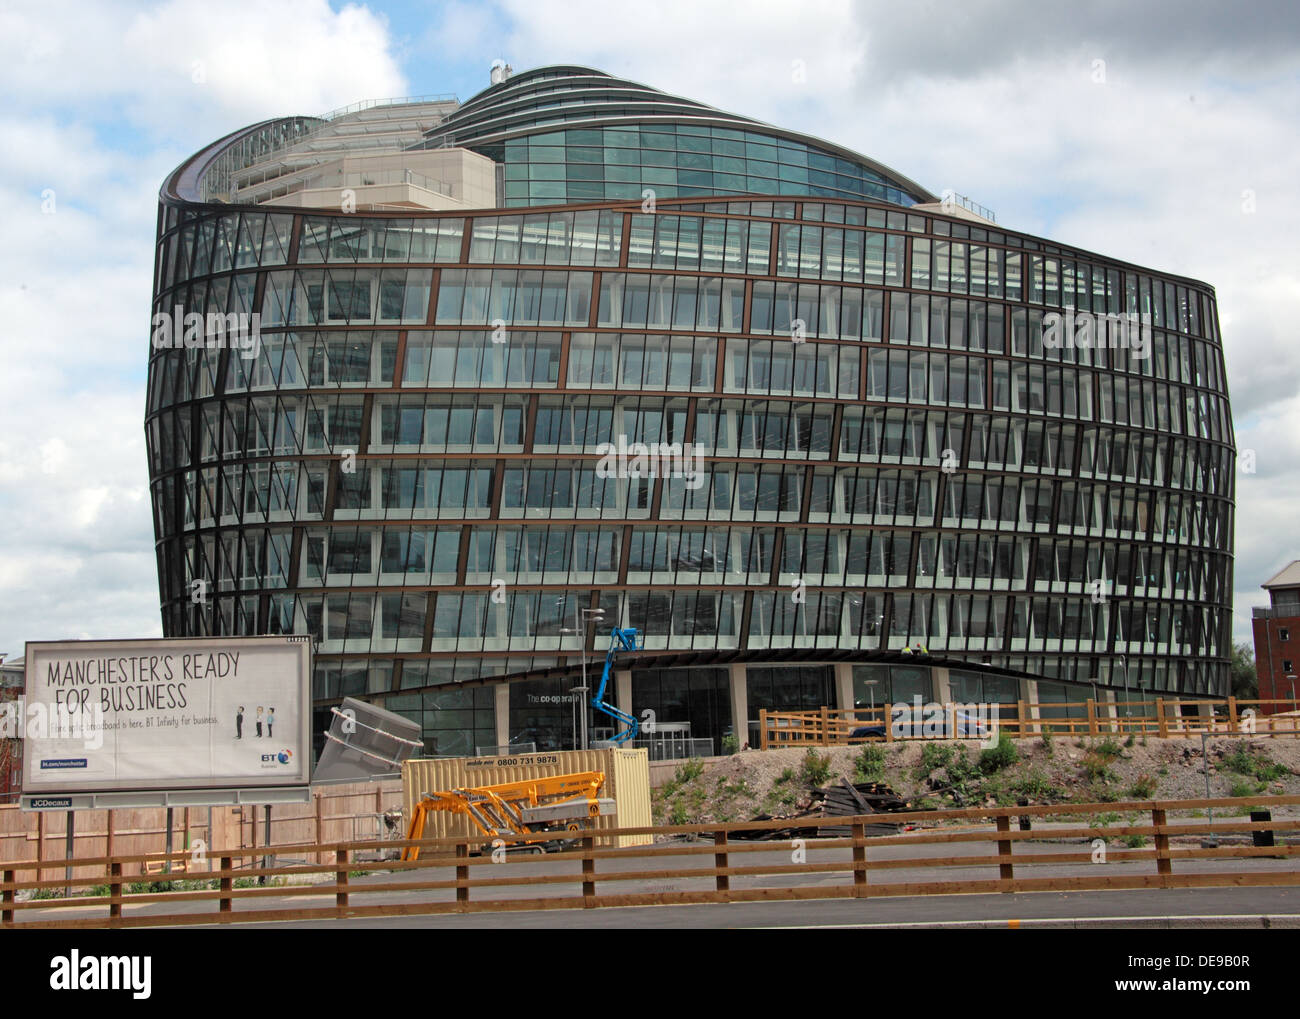 Ein Engel Platz Manchester Co-op-Gebäude, England, UK mit Manchester bereit für Business-Plakat Stockfoto